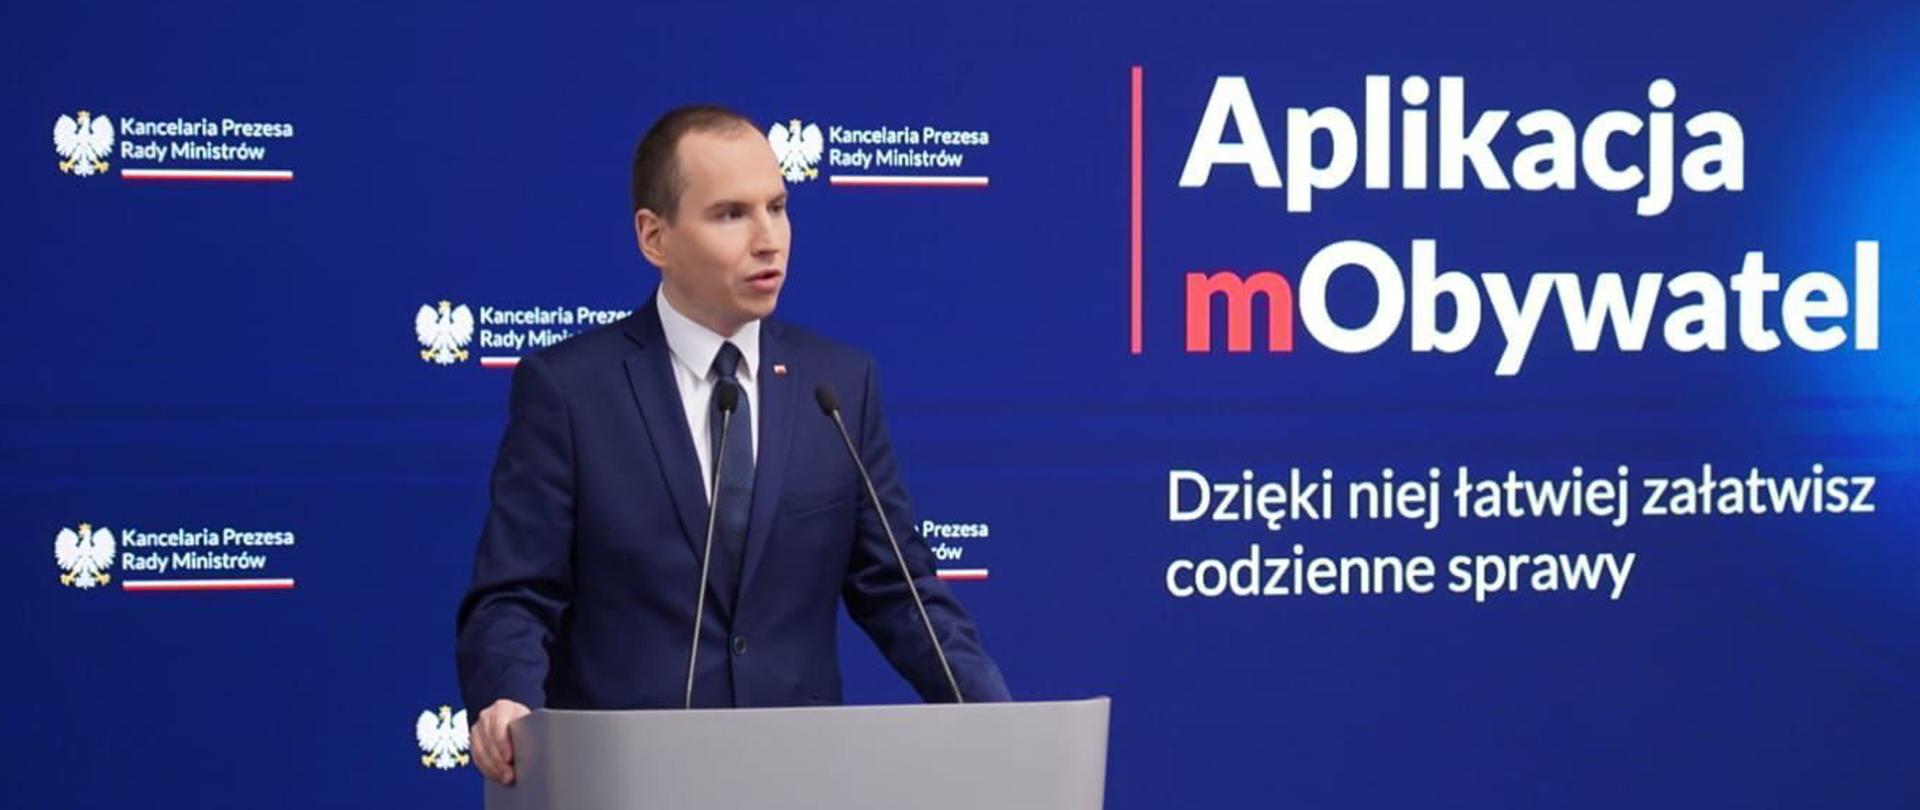 Na zdjęciu minister Adam Andruszkiewicz podczas konferencji prasowej w Kancelarii Premiera. Na ekranie w tle wyświetlany jest tekst "Aplikacja mObywatel. Dzięki niej łatwiej załatwisz codzienne sprawy" 